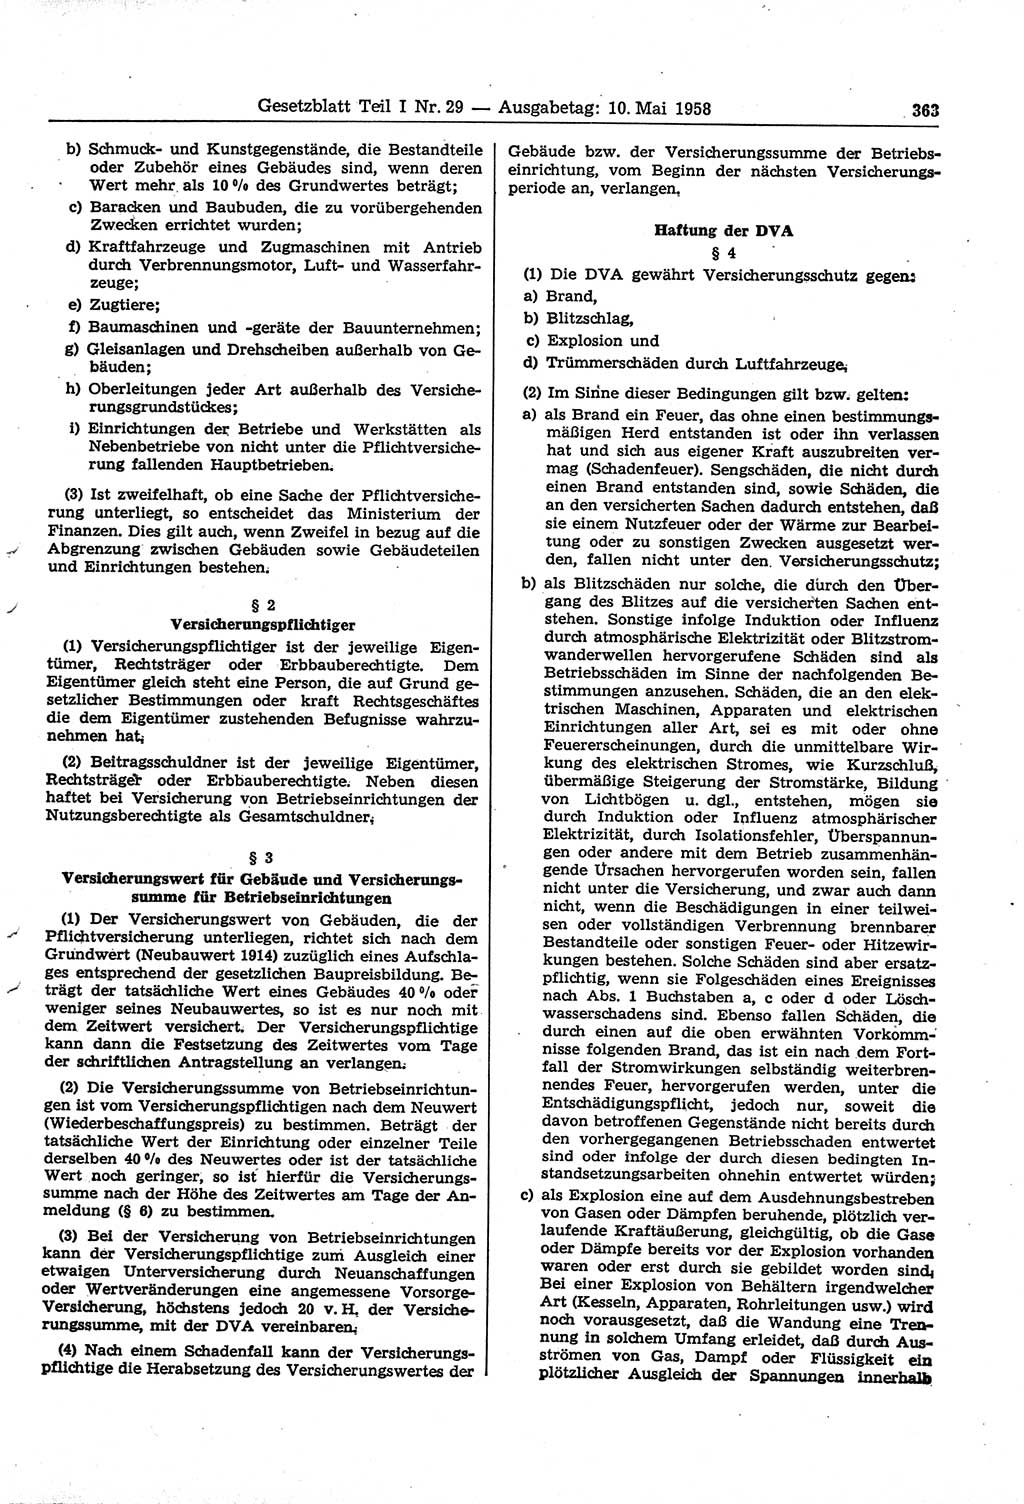 Gesetzblatt (GBl.) der Deutschen Demokratischen Republik (DDR) Teil Ⅰ 1958, Seite 363 (GBl. DDR Ⅰ 1958, S. 363)